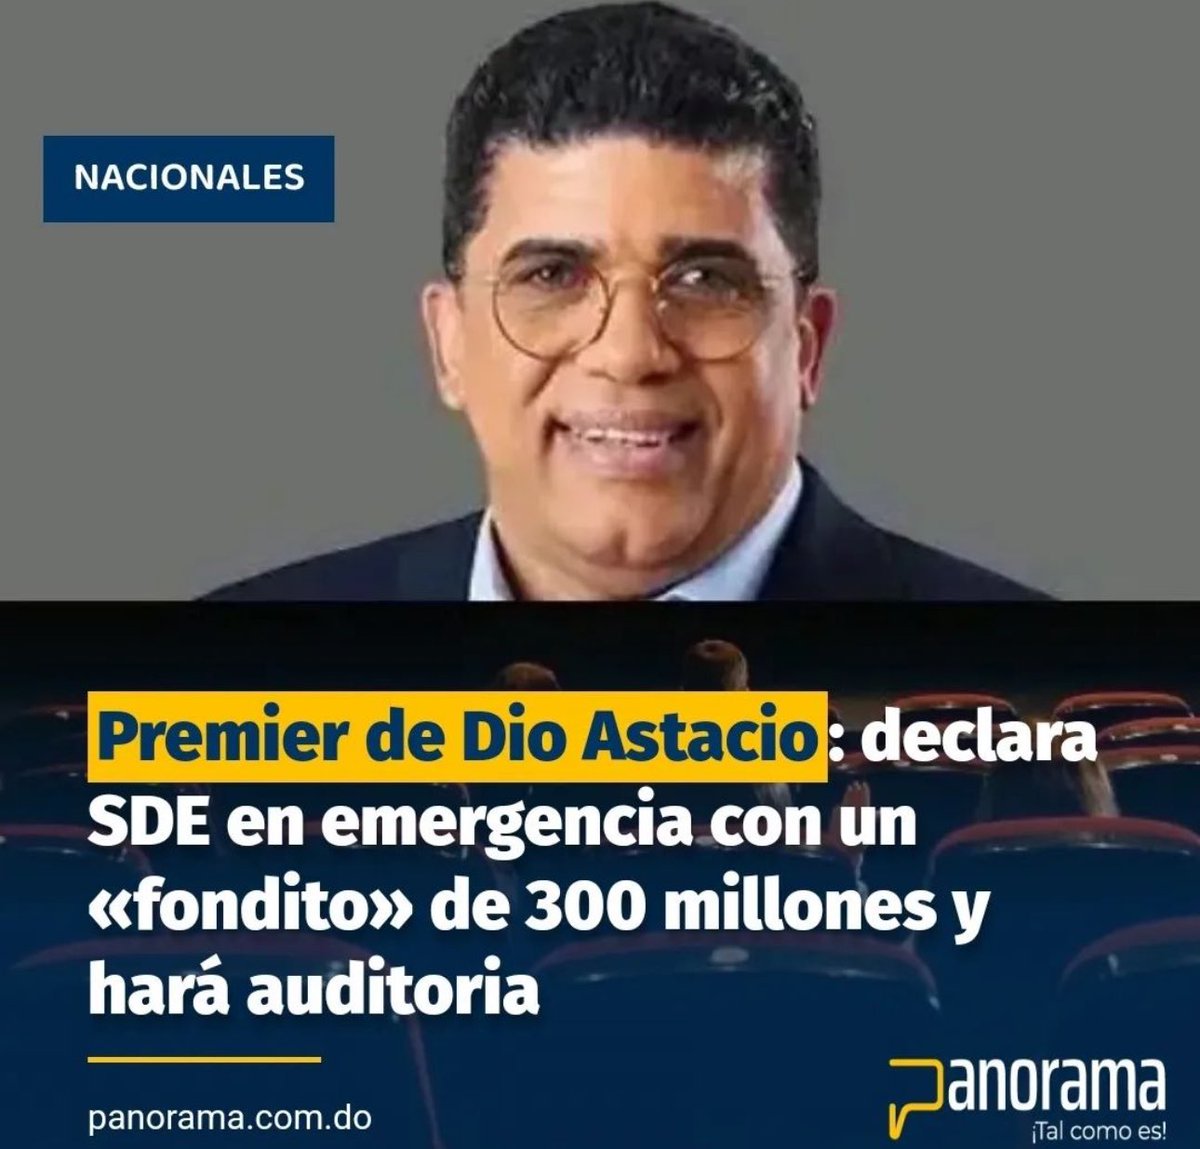 Dío Astacio declara SDE en emergencia con “FONDITO” de 300 millones y hará auditoría. 
¿Se embromó Manuel Jiménez ?

¿Qué dice el pueblo?